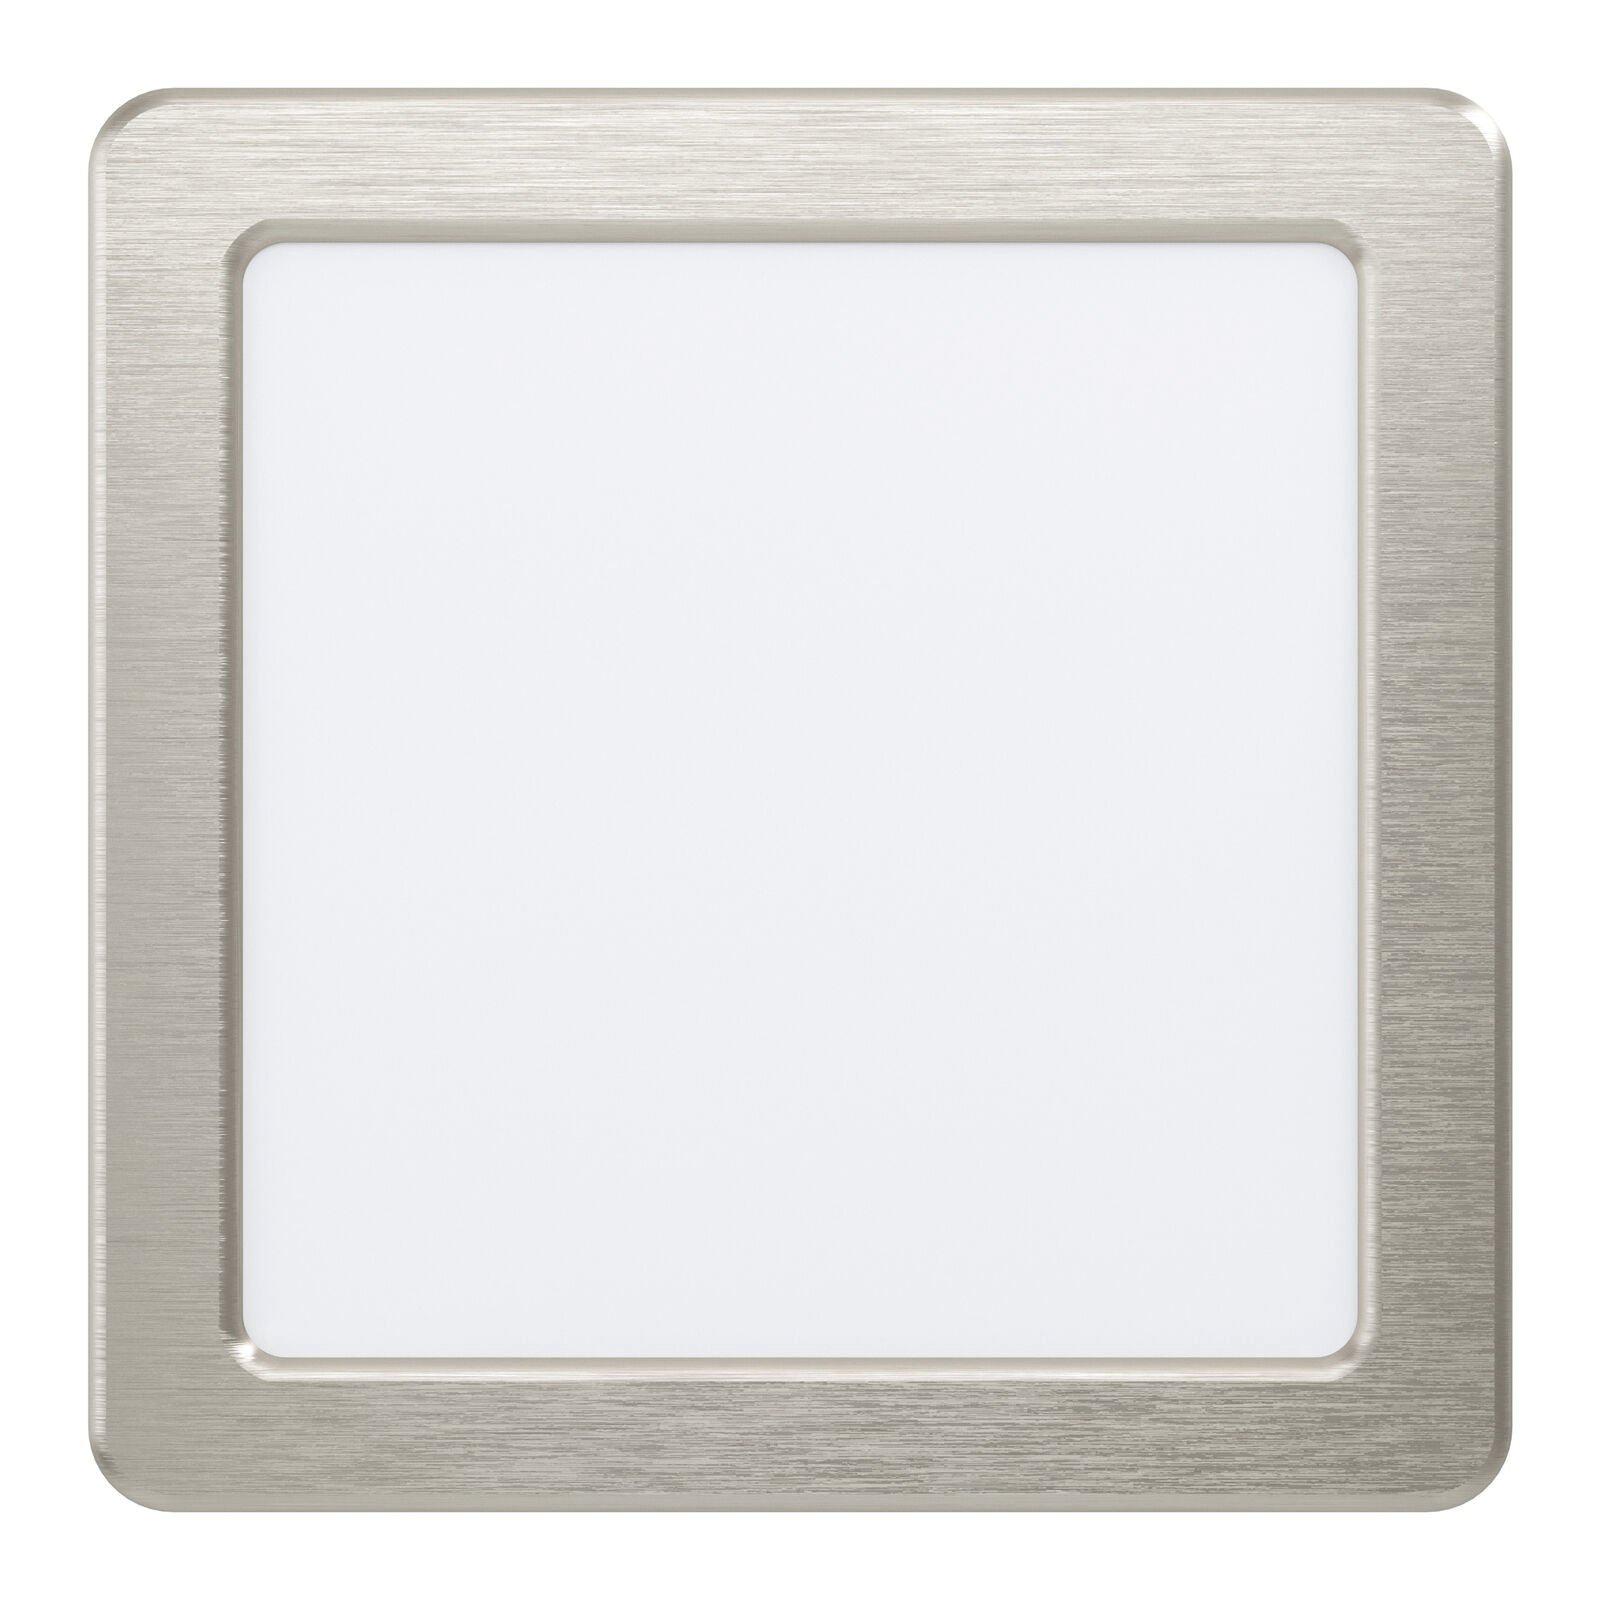 Wall / Ceiling Flush Downlight Satin Nickel Spotlight 10.5W Built in LED